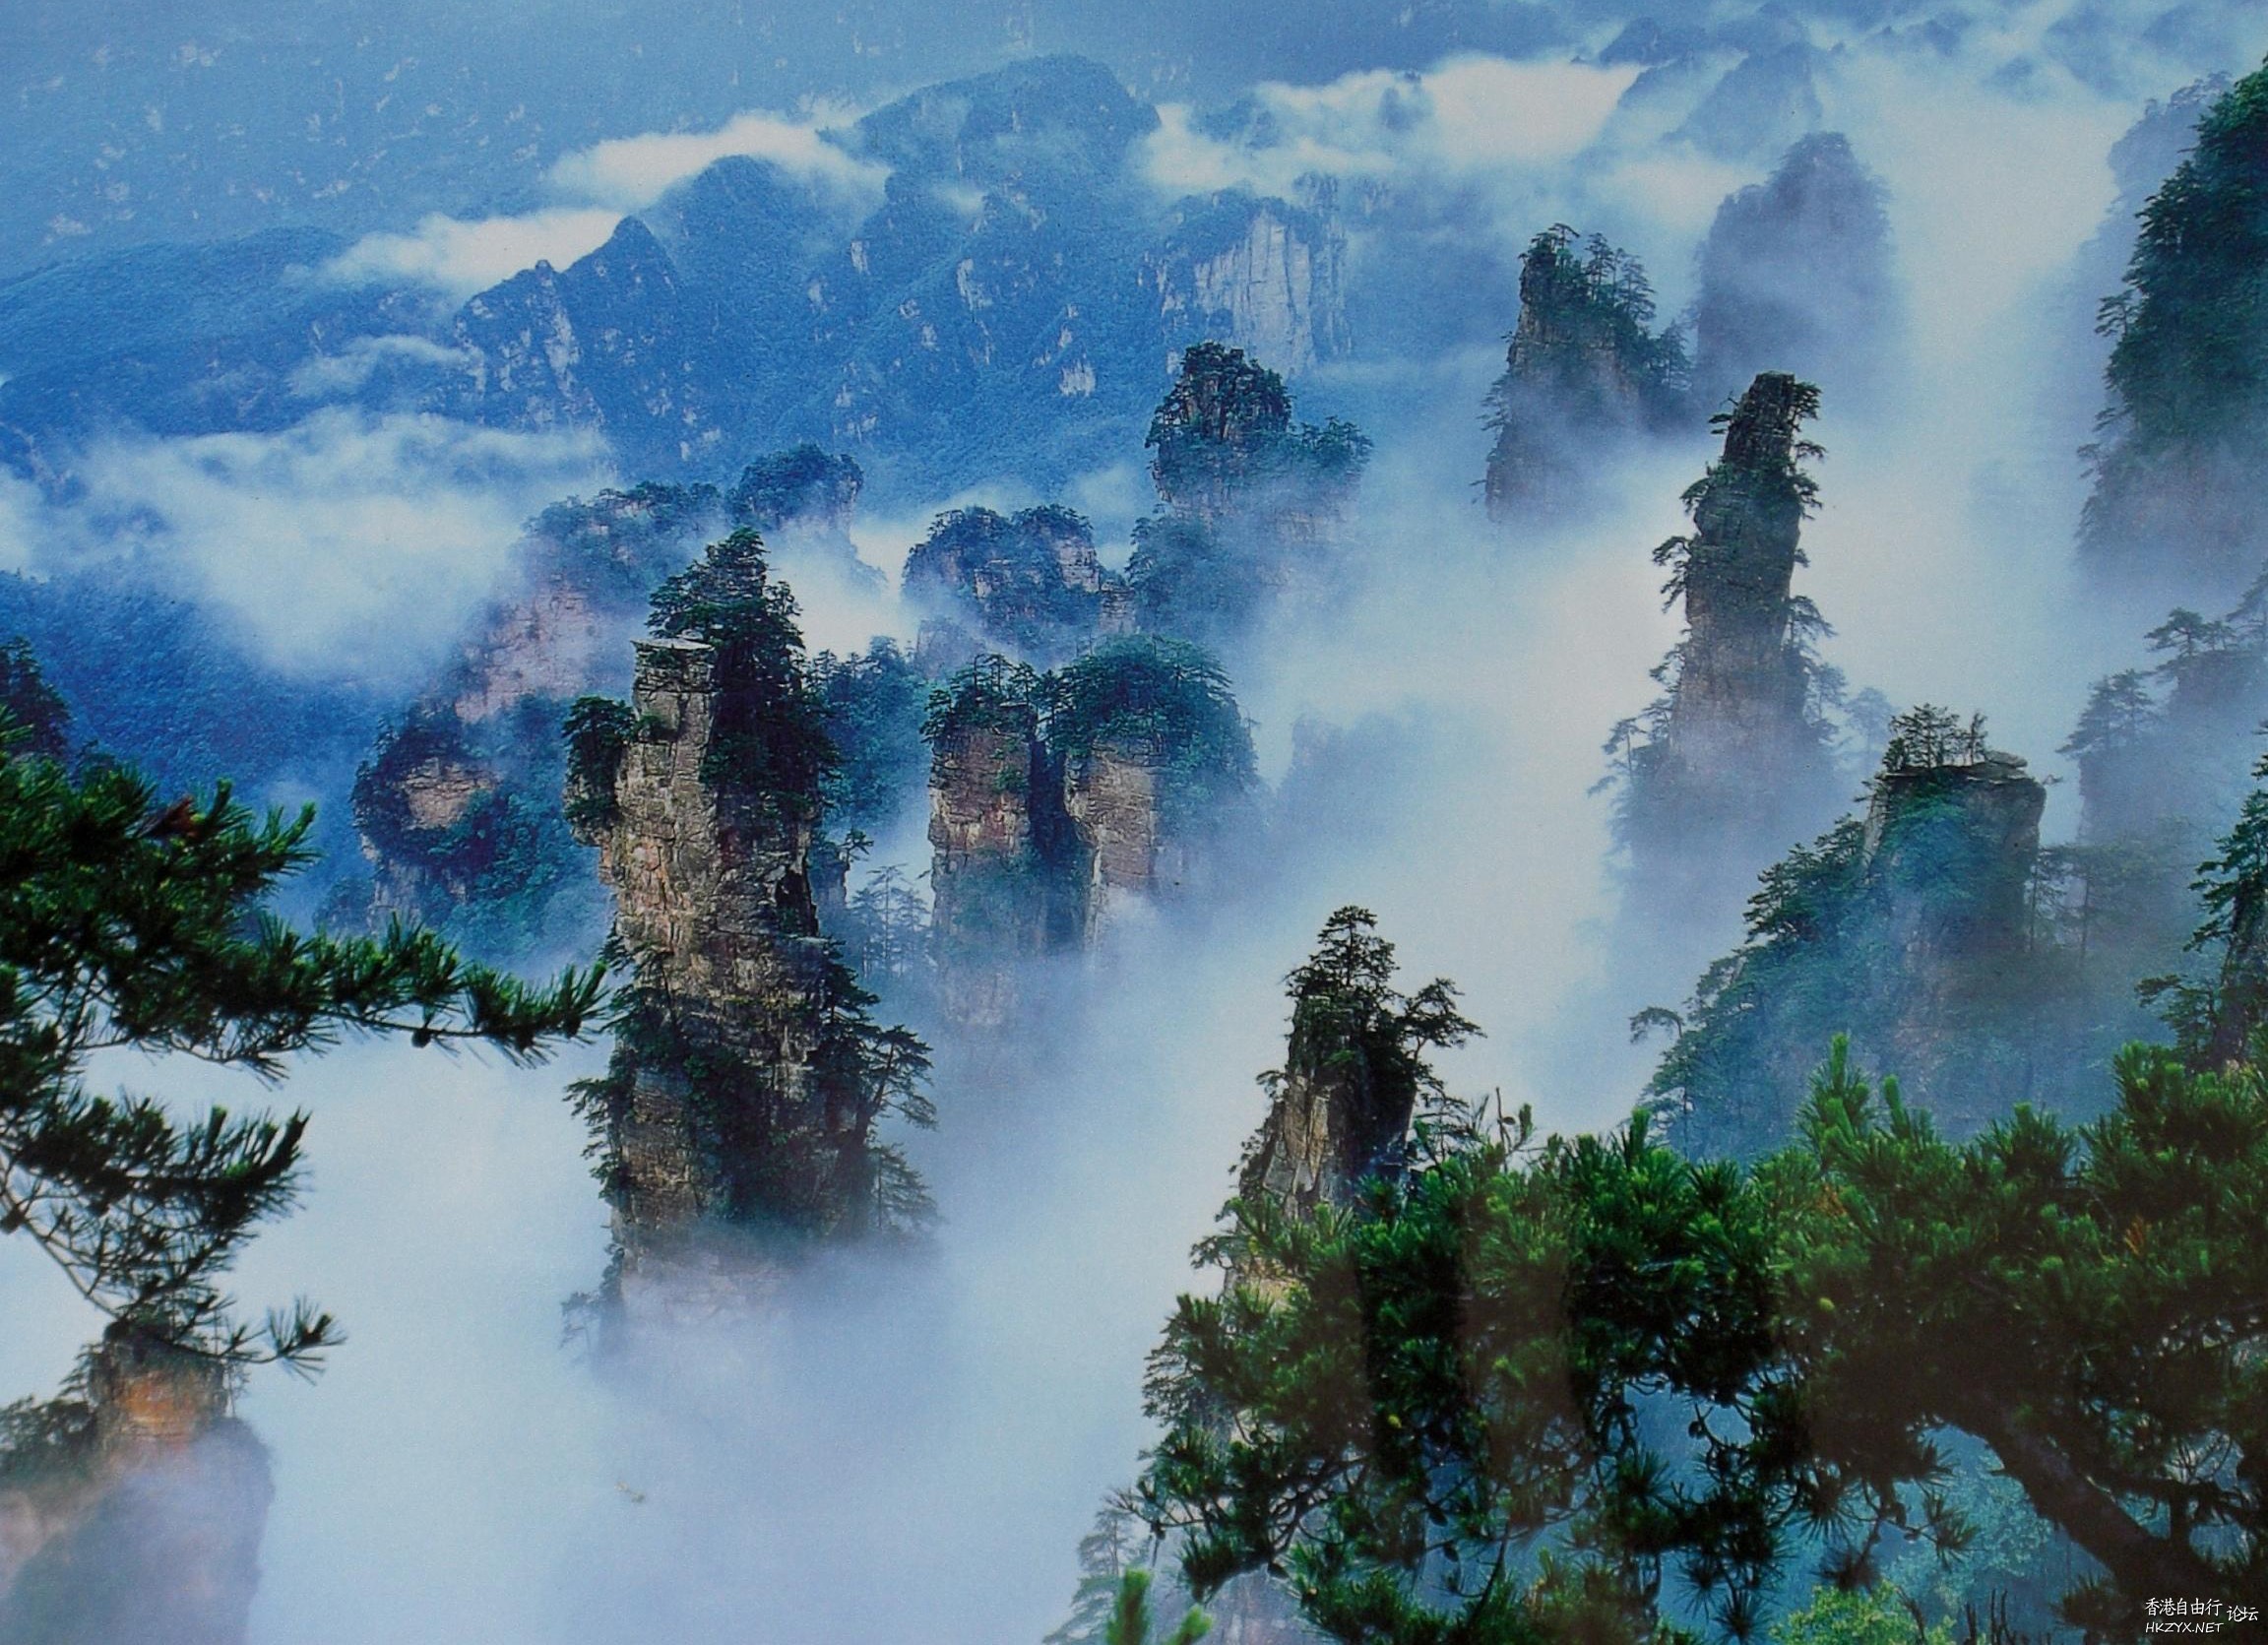 玻璃栈道-天门山  ChinaTravel 中國觀光景點